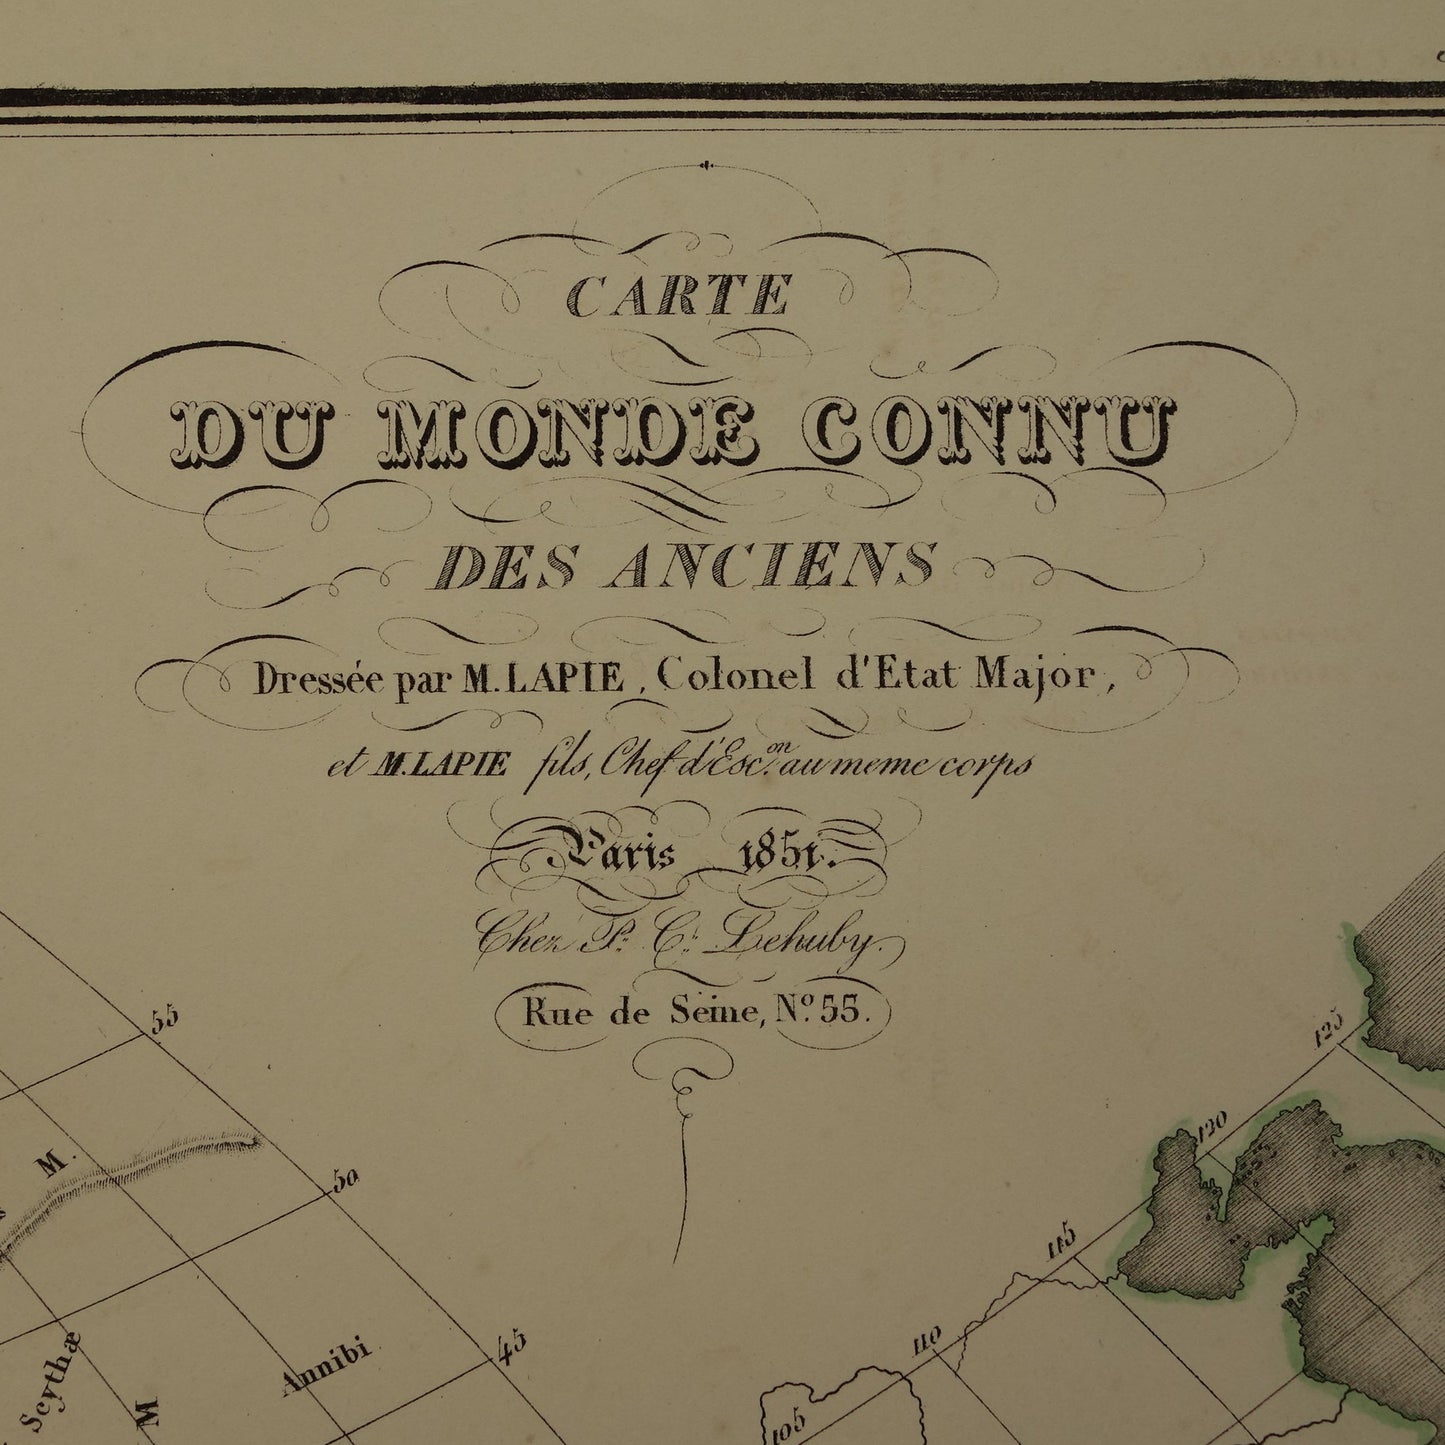 carte du monde connu des anciens 1851 lapie